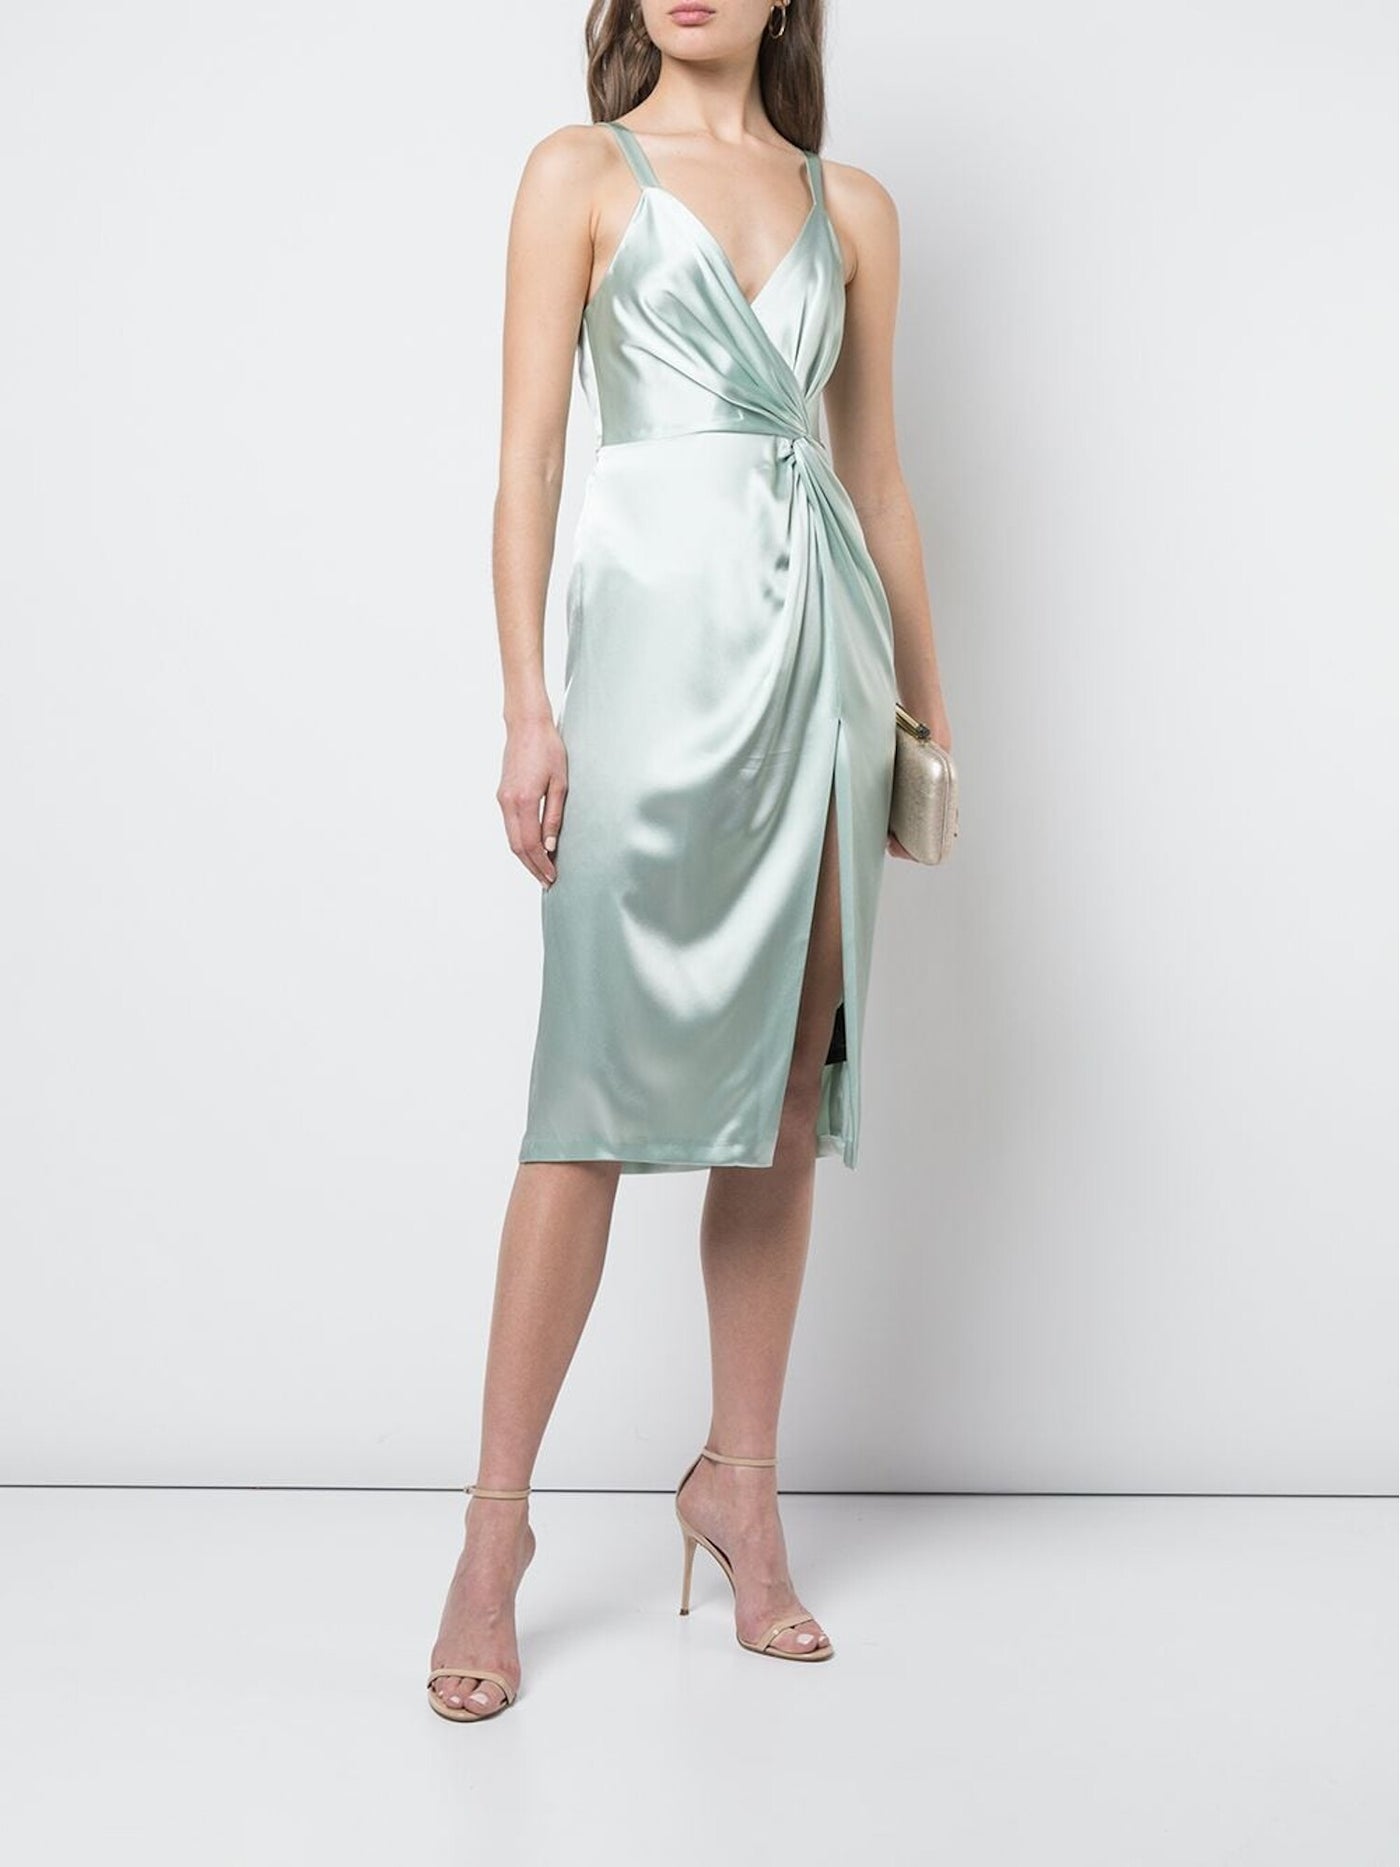 JILL STUART Womens Green Sleeveless Above The Knee Sheath Evening Dress Size: 8